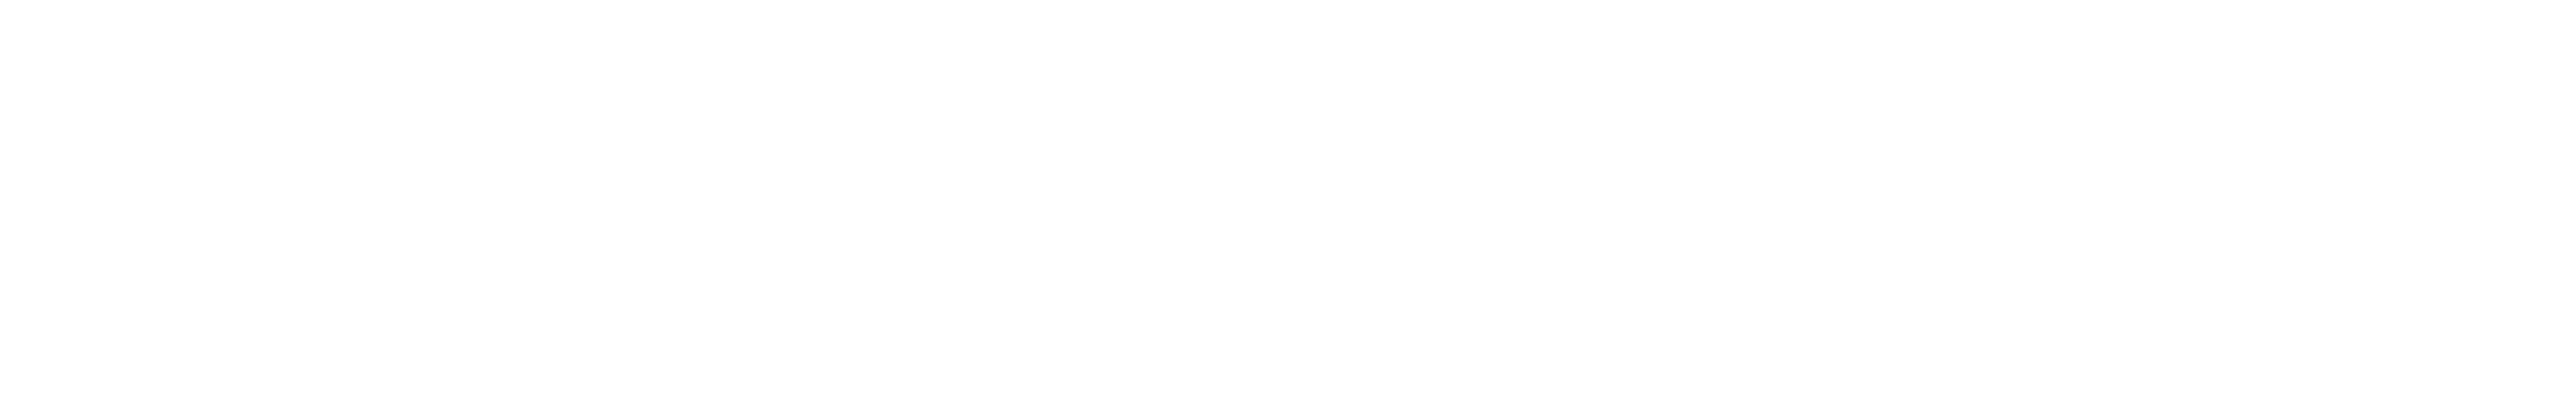 Arctiq-logo-white